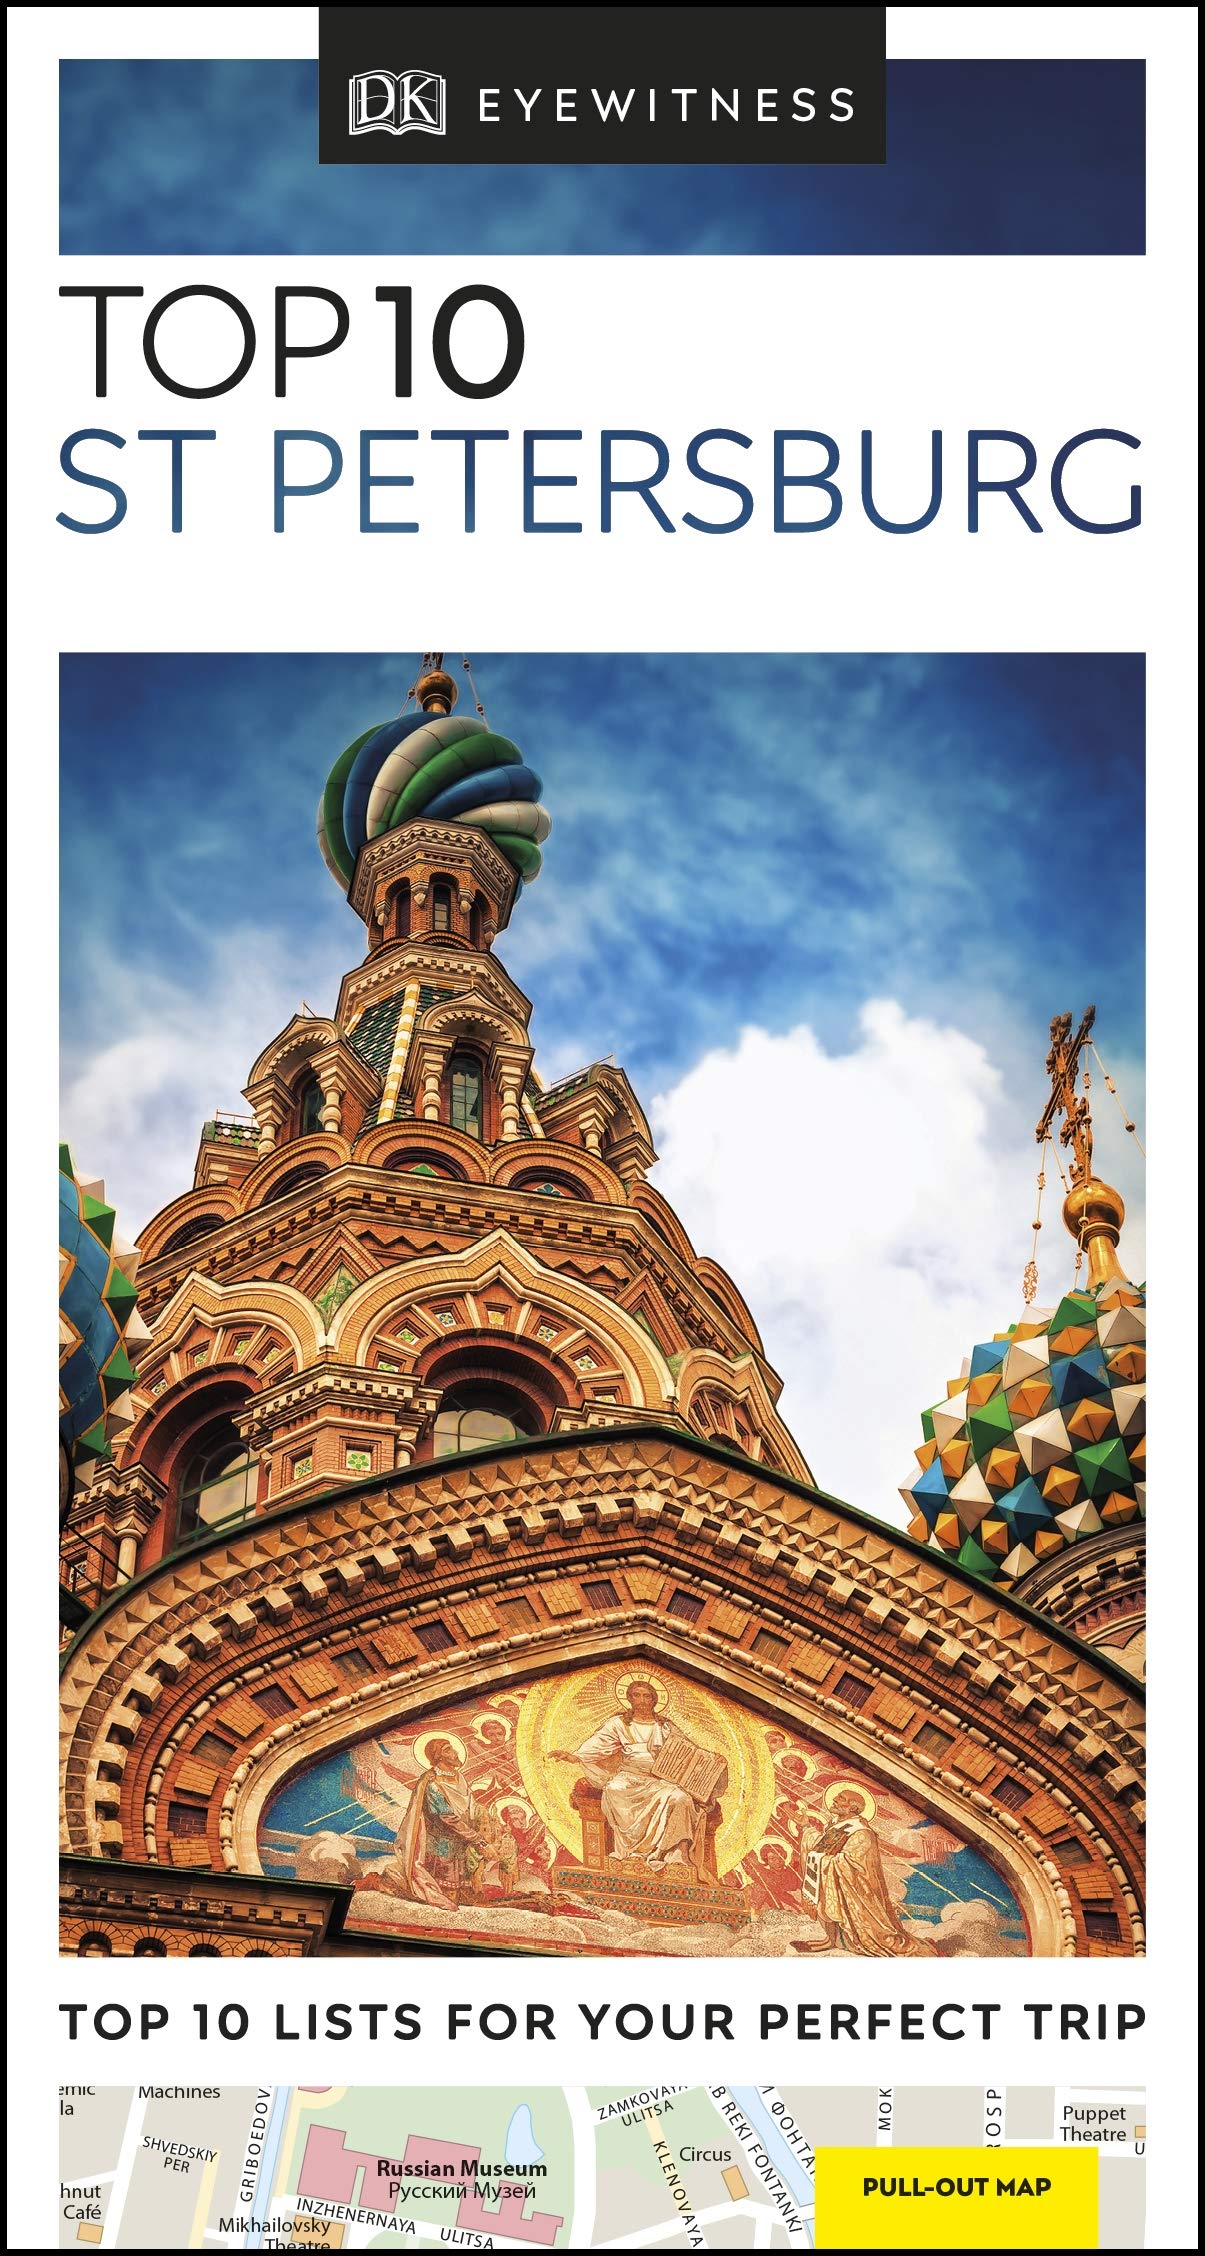 DK Eyewitness Top 10 St Petersburg (Pocket Travel Guide)